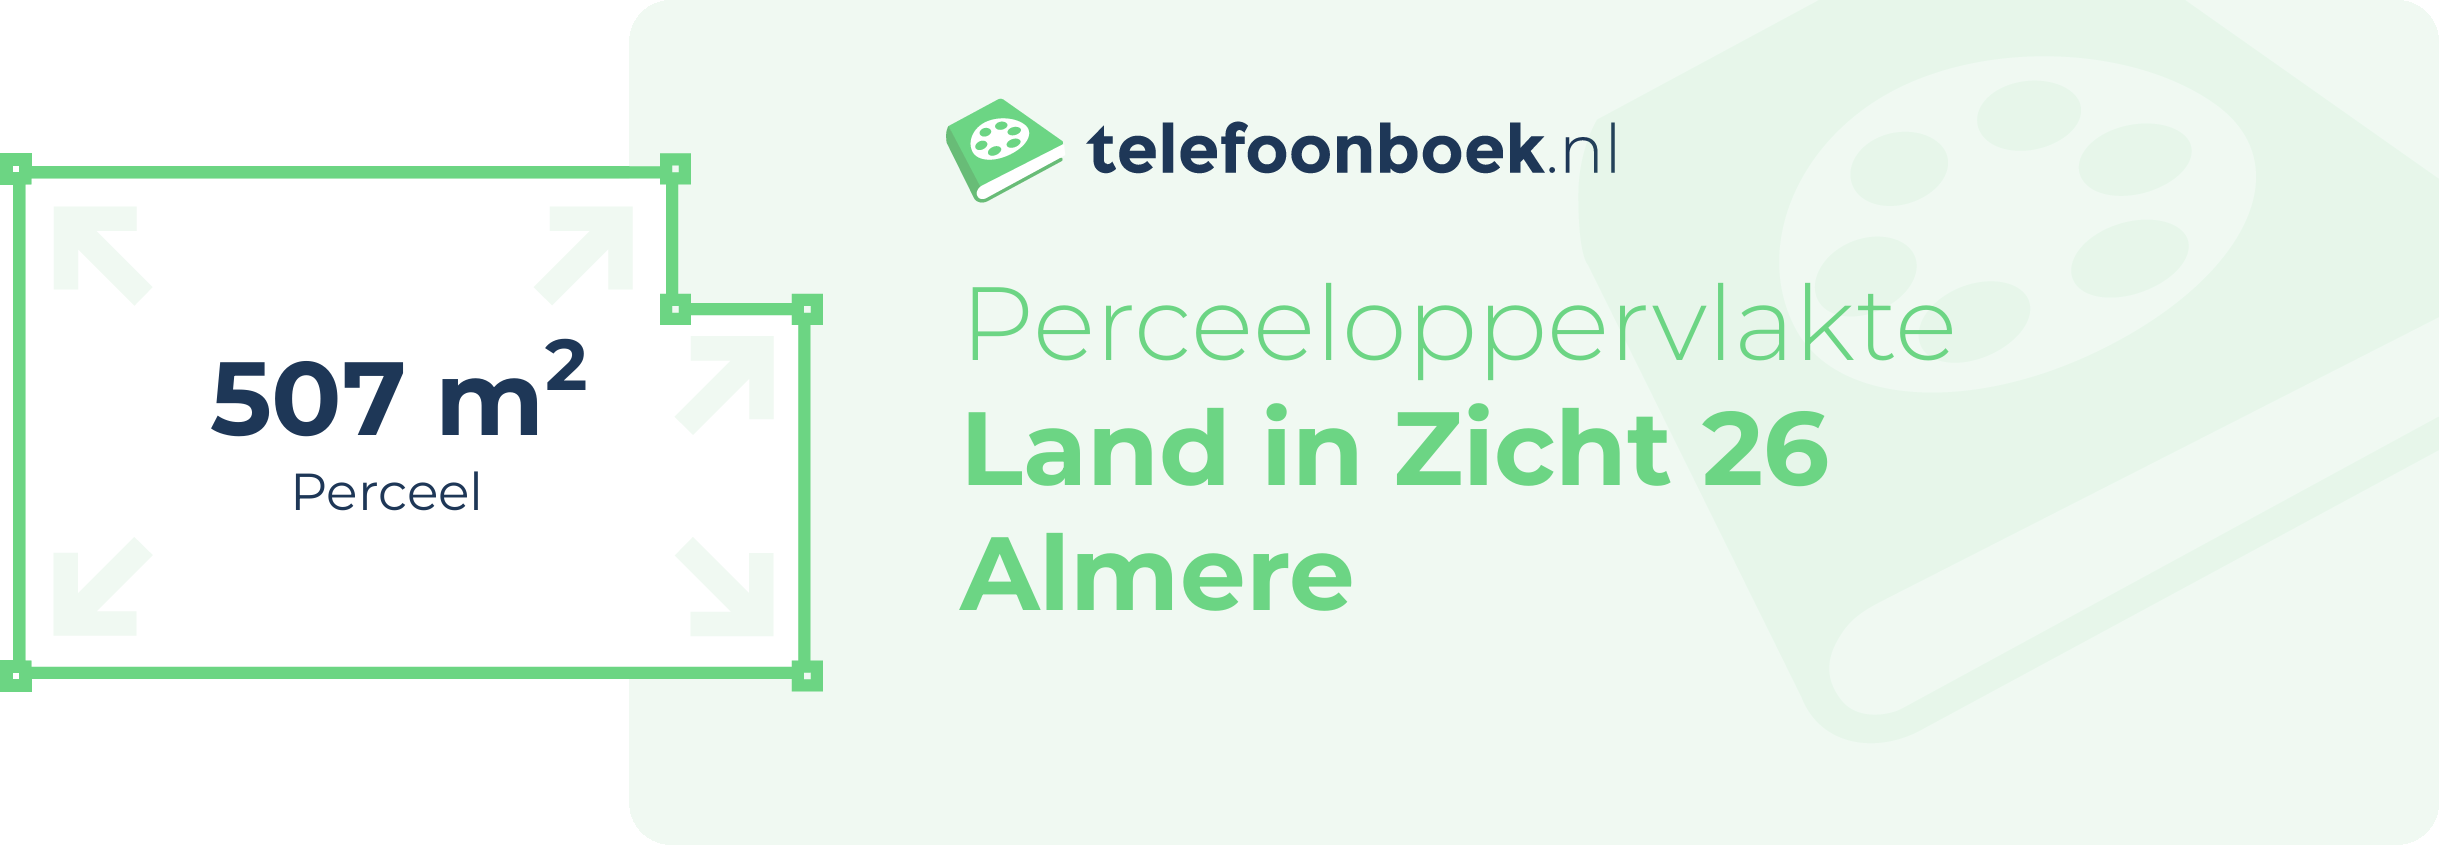 Perceeloppervlakte Land In Zicht 26 Almere